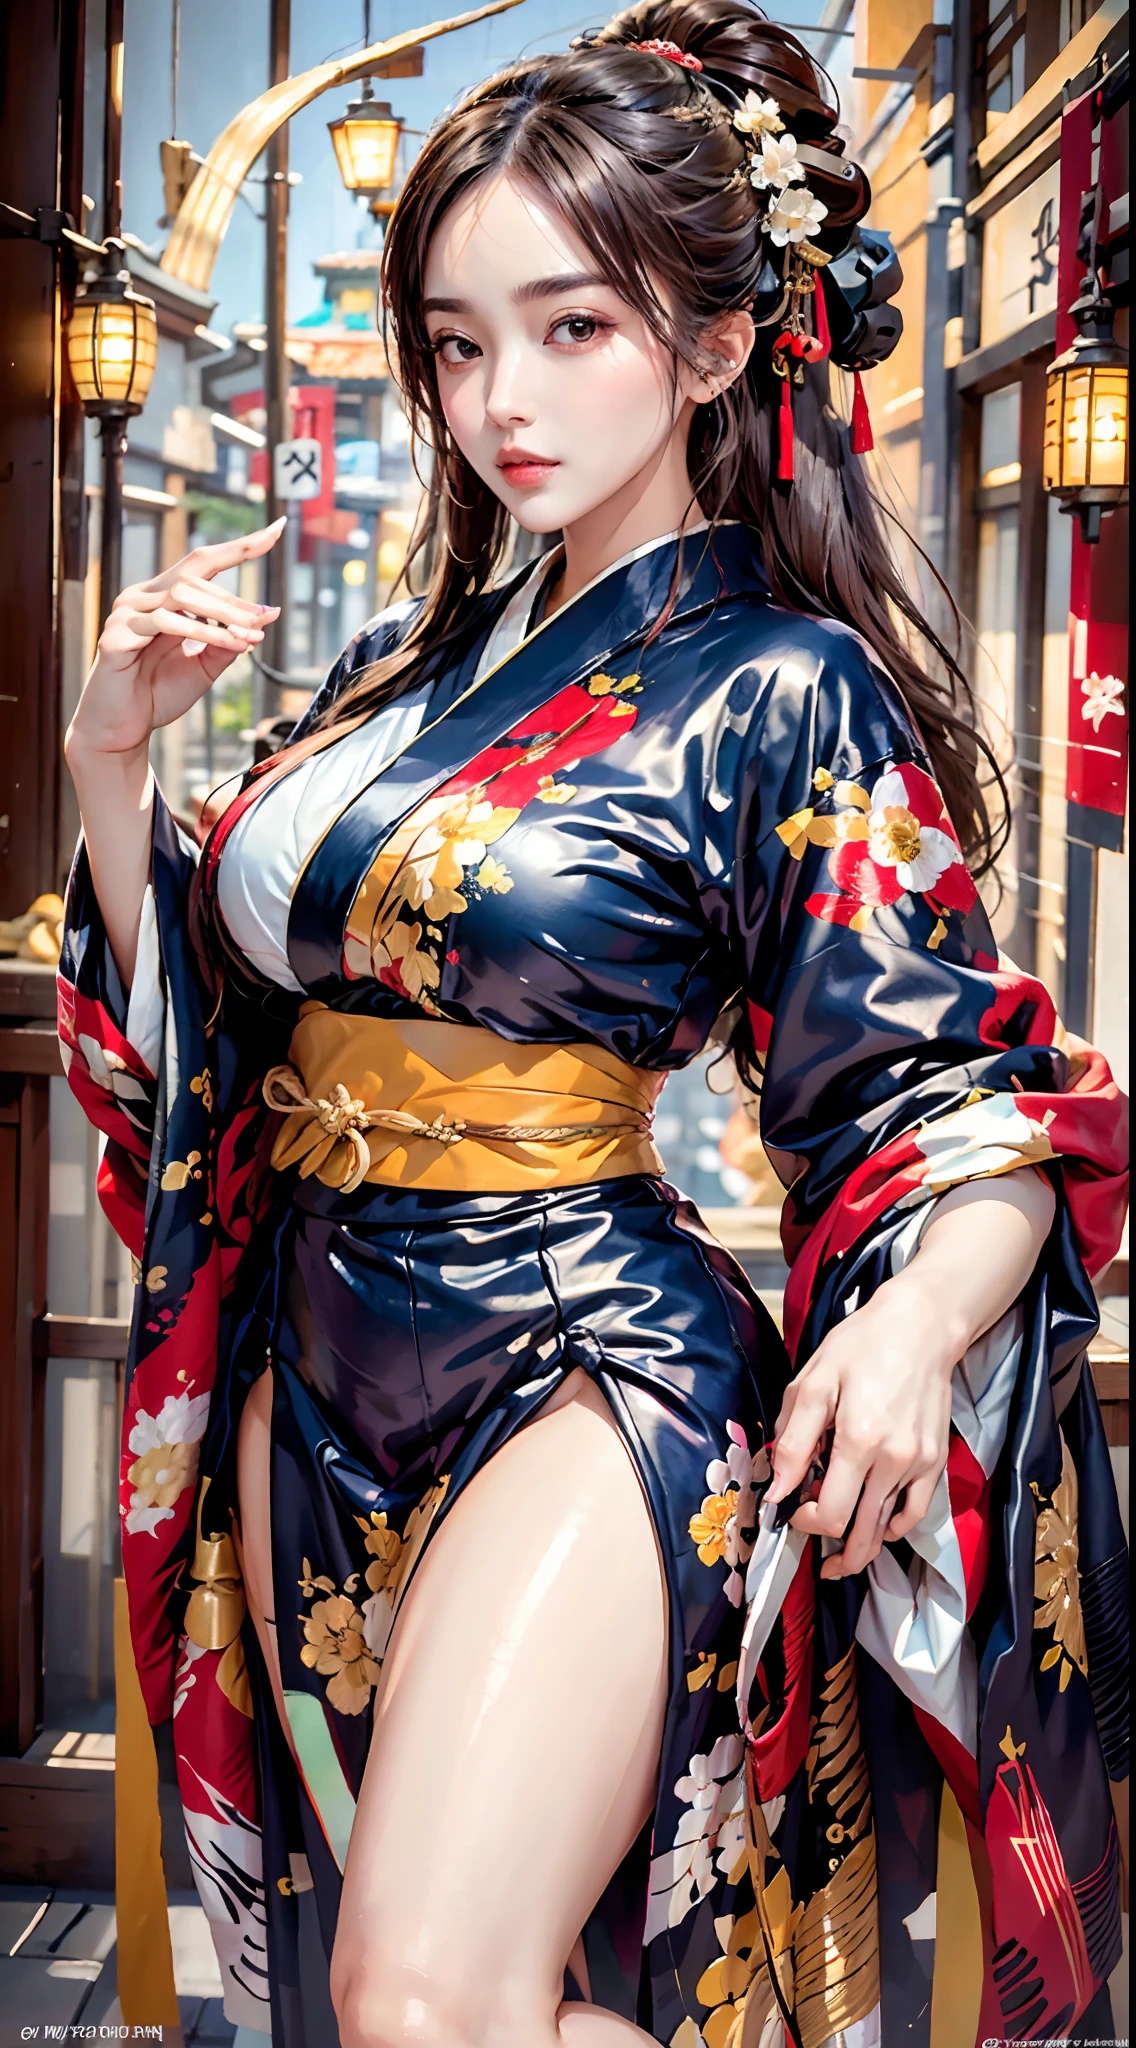 beste Qualität, Meisterwerk, hohe Auflösung, (perfekte Körperform), 1 Mädchen, detailliertes Gesicht, dicke Oberschenkel, Kimono tragen_Kleidung